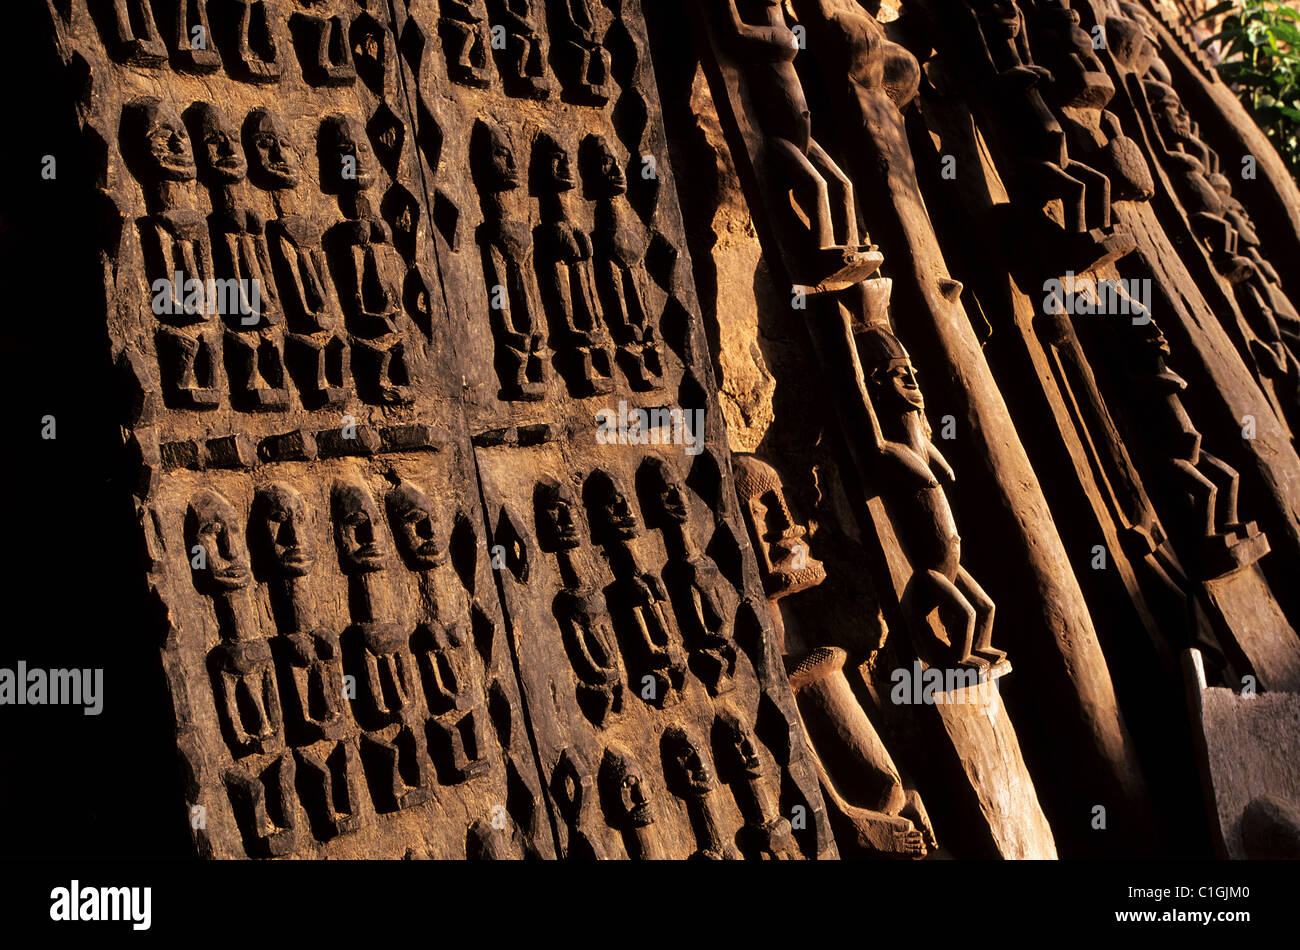 Mali, pays Dogon, le village de Tireli au bas de la falaise de Bandiagara, pays dogon porte sculptée en bois Banque D'Images